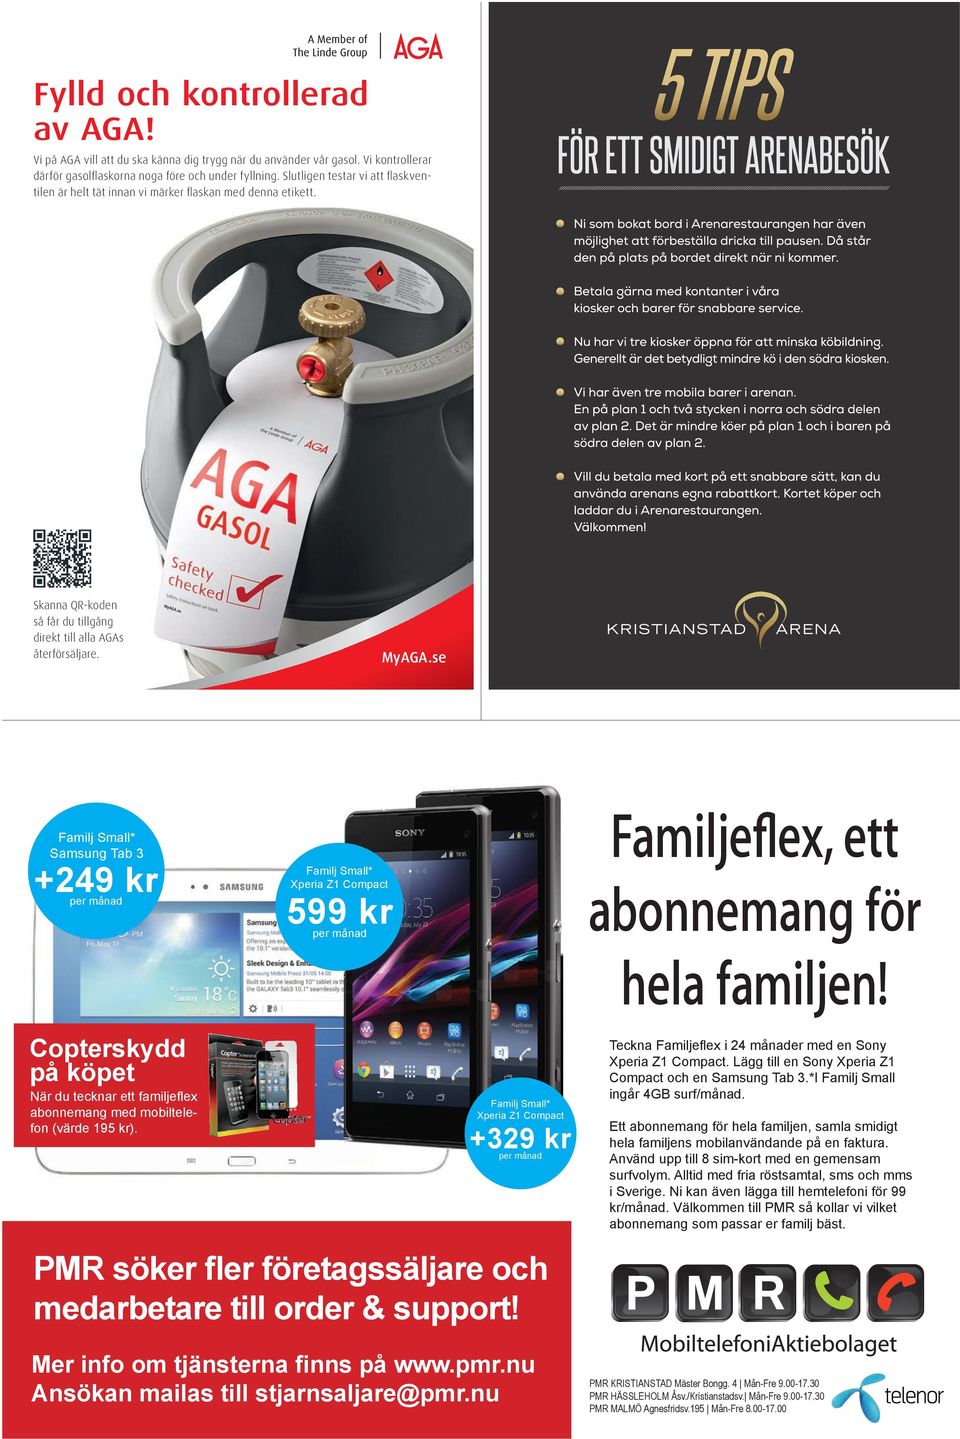 se Familj Small* Samsung Tab 3 +249 kr per månad Familj Small* Xperia Z1 Compact 599 kr per månad Familjeflex, ett abonnemang för hela familjen!